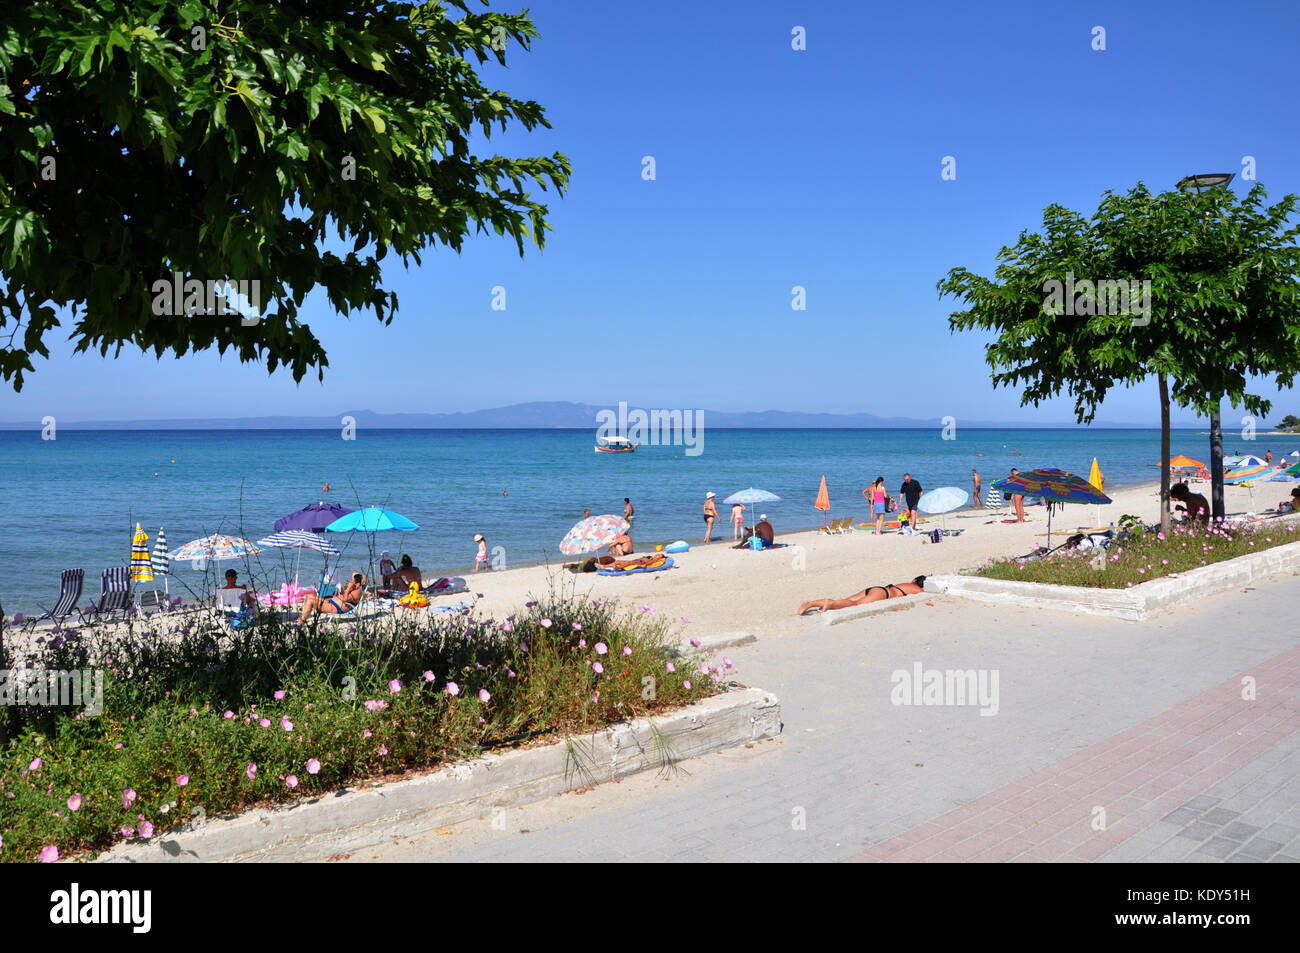 Beach of village Polychrono in peninsula Kassandra Halkidiki Greece Stock Photo